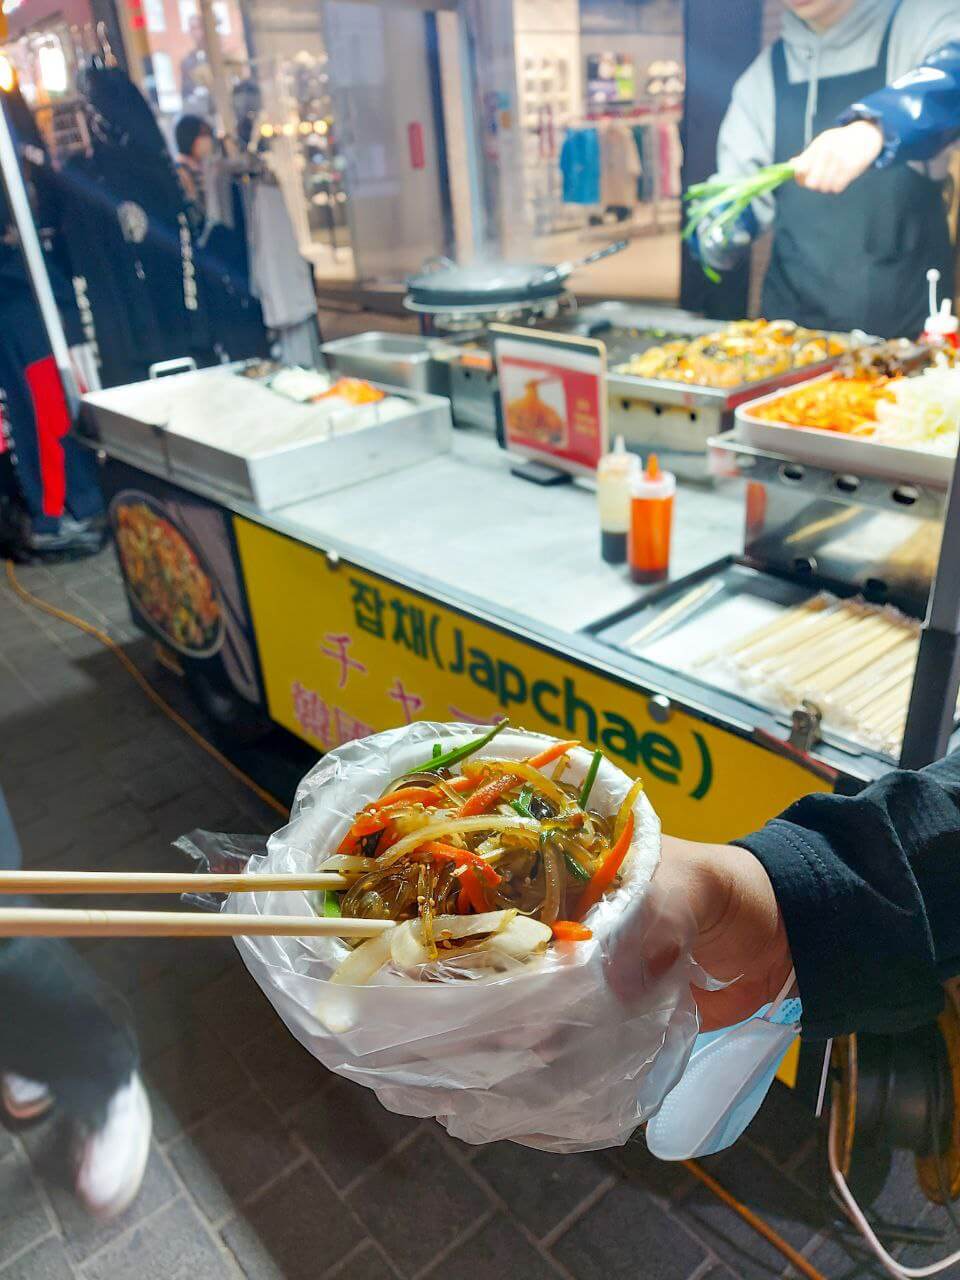 japchae is one of the best Korean street food